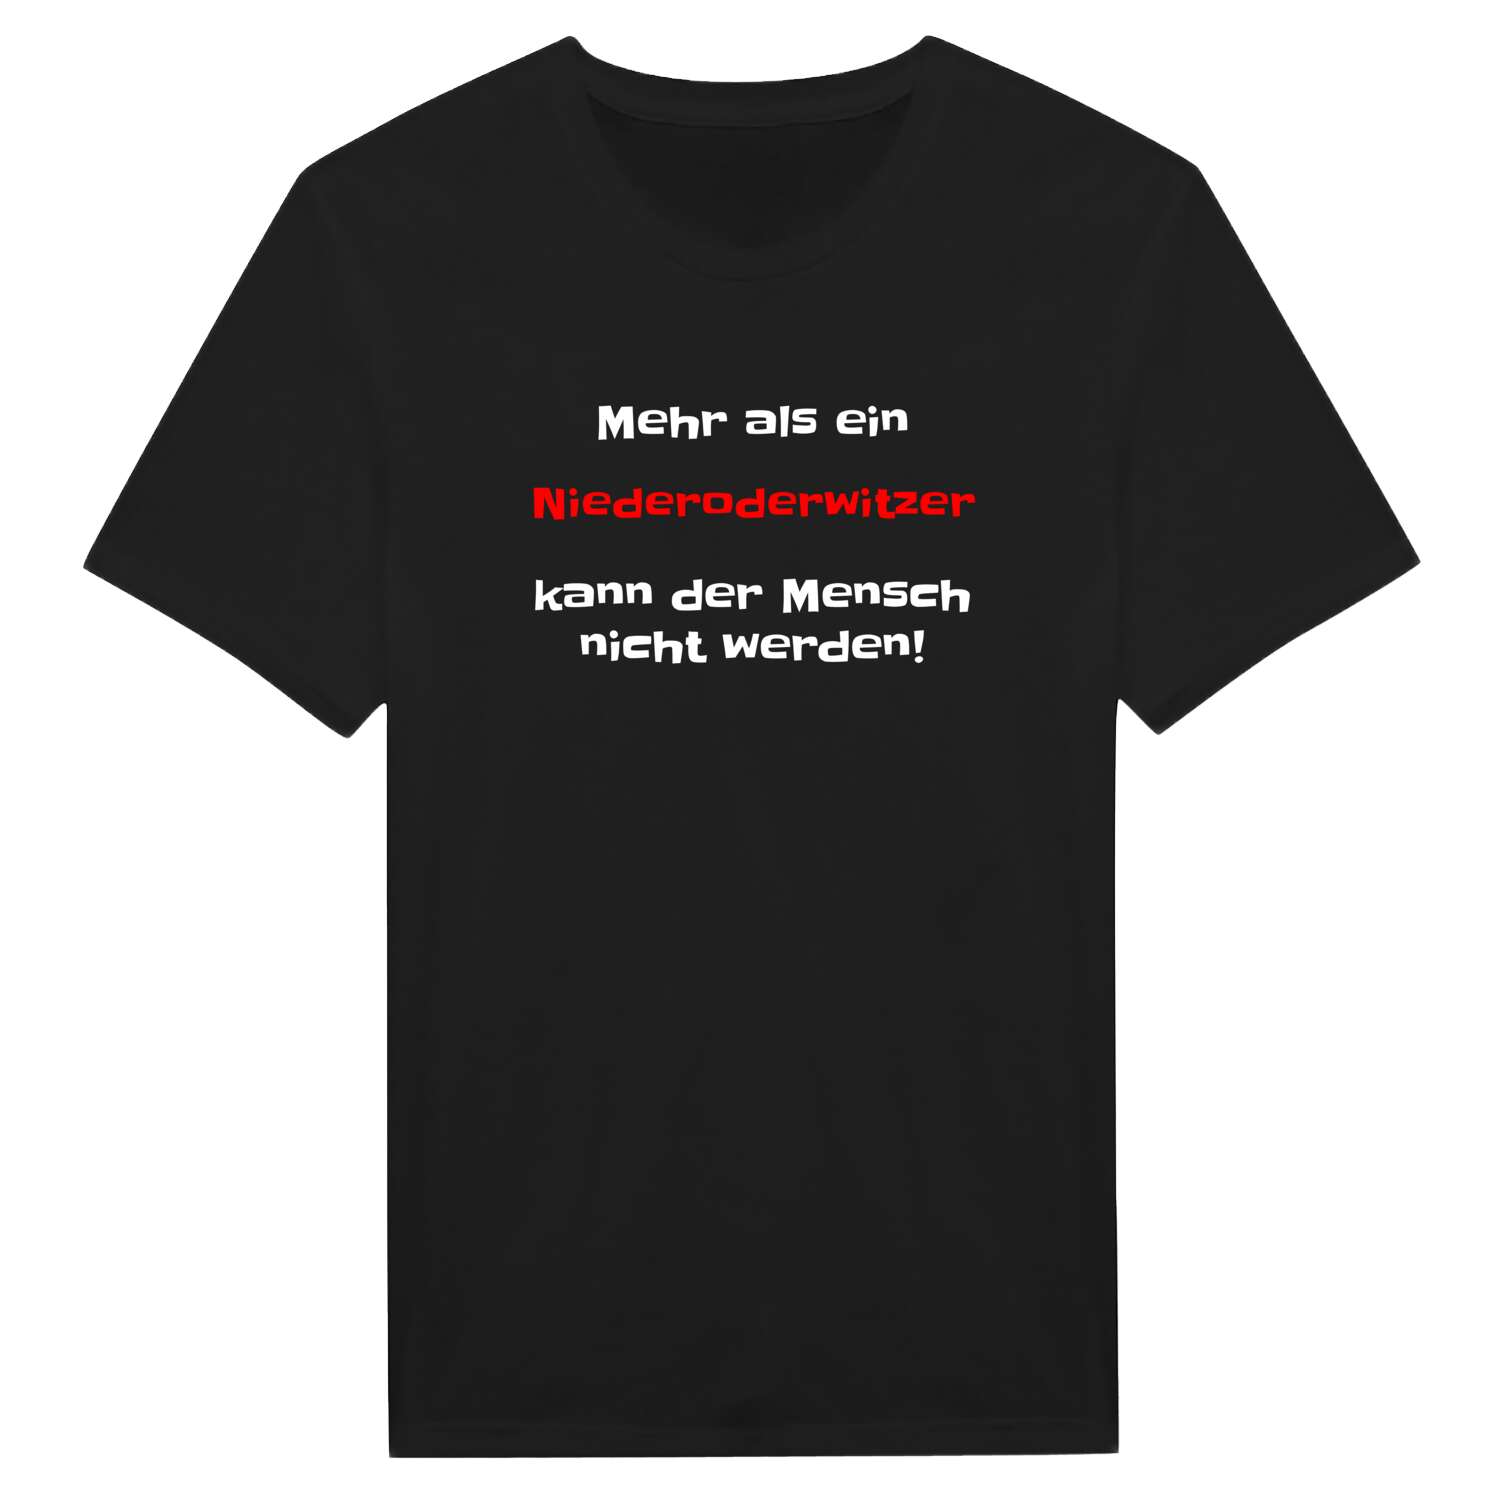 Niederoderwitz T-Shirt »Mehr als ein«